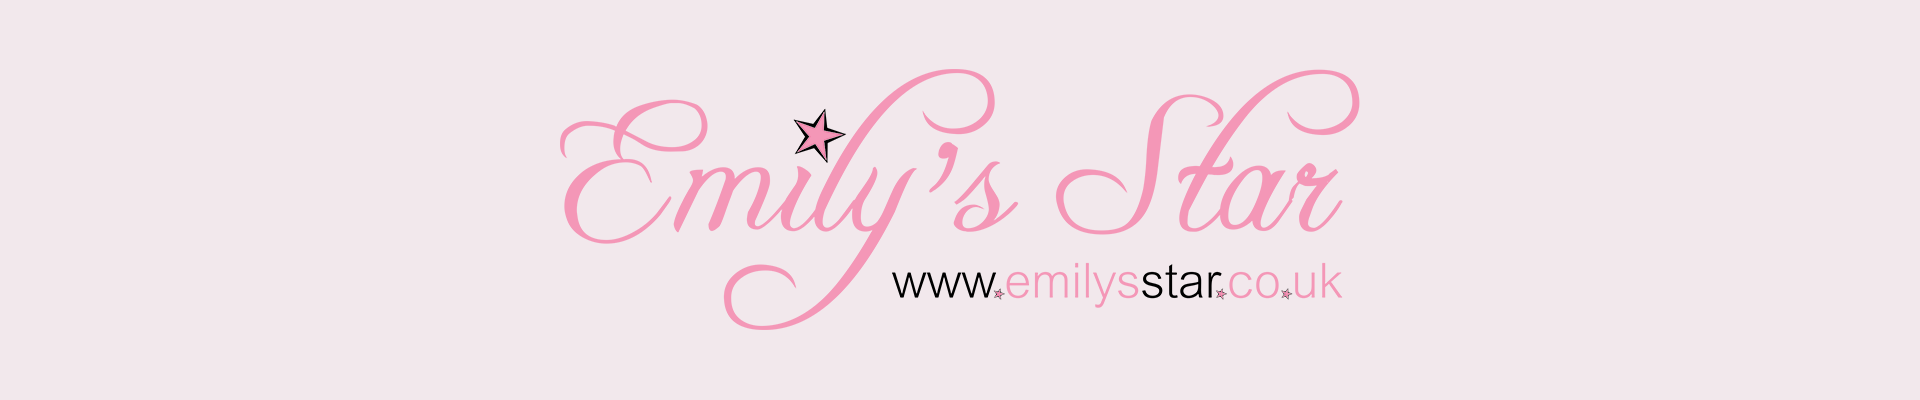 Emily's Star 5k & 10k 2018